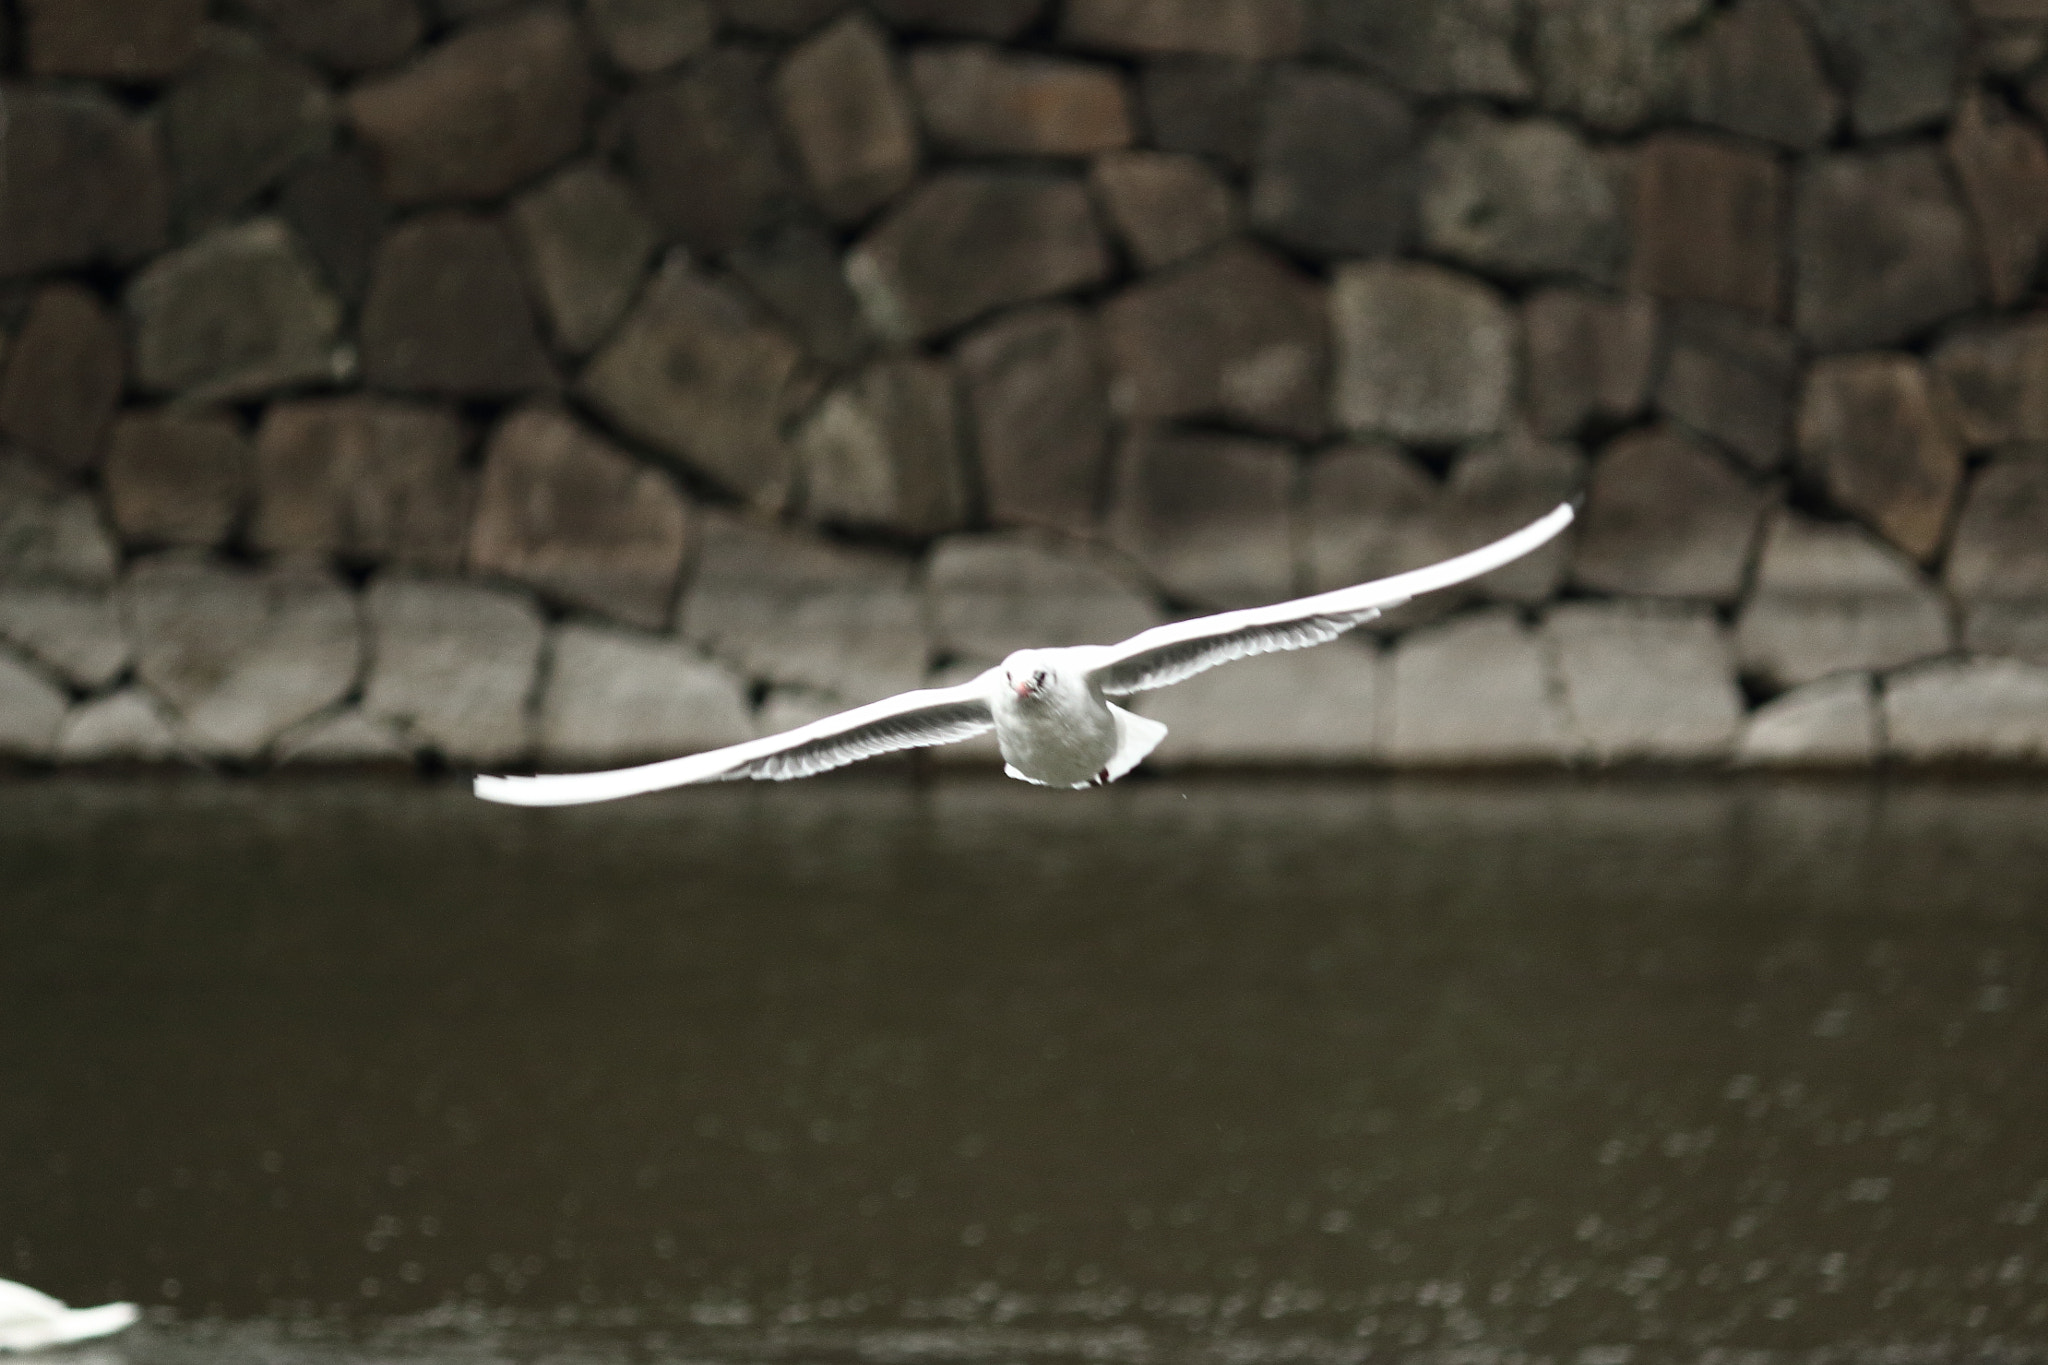 Canon EOS 100D (EOS Rebel SL1 / EOS Kiss X7) sample photo. A flying bird photography